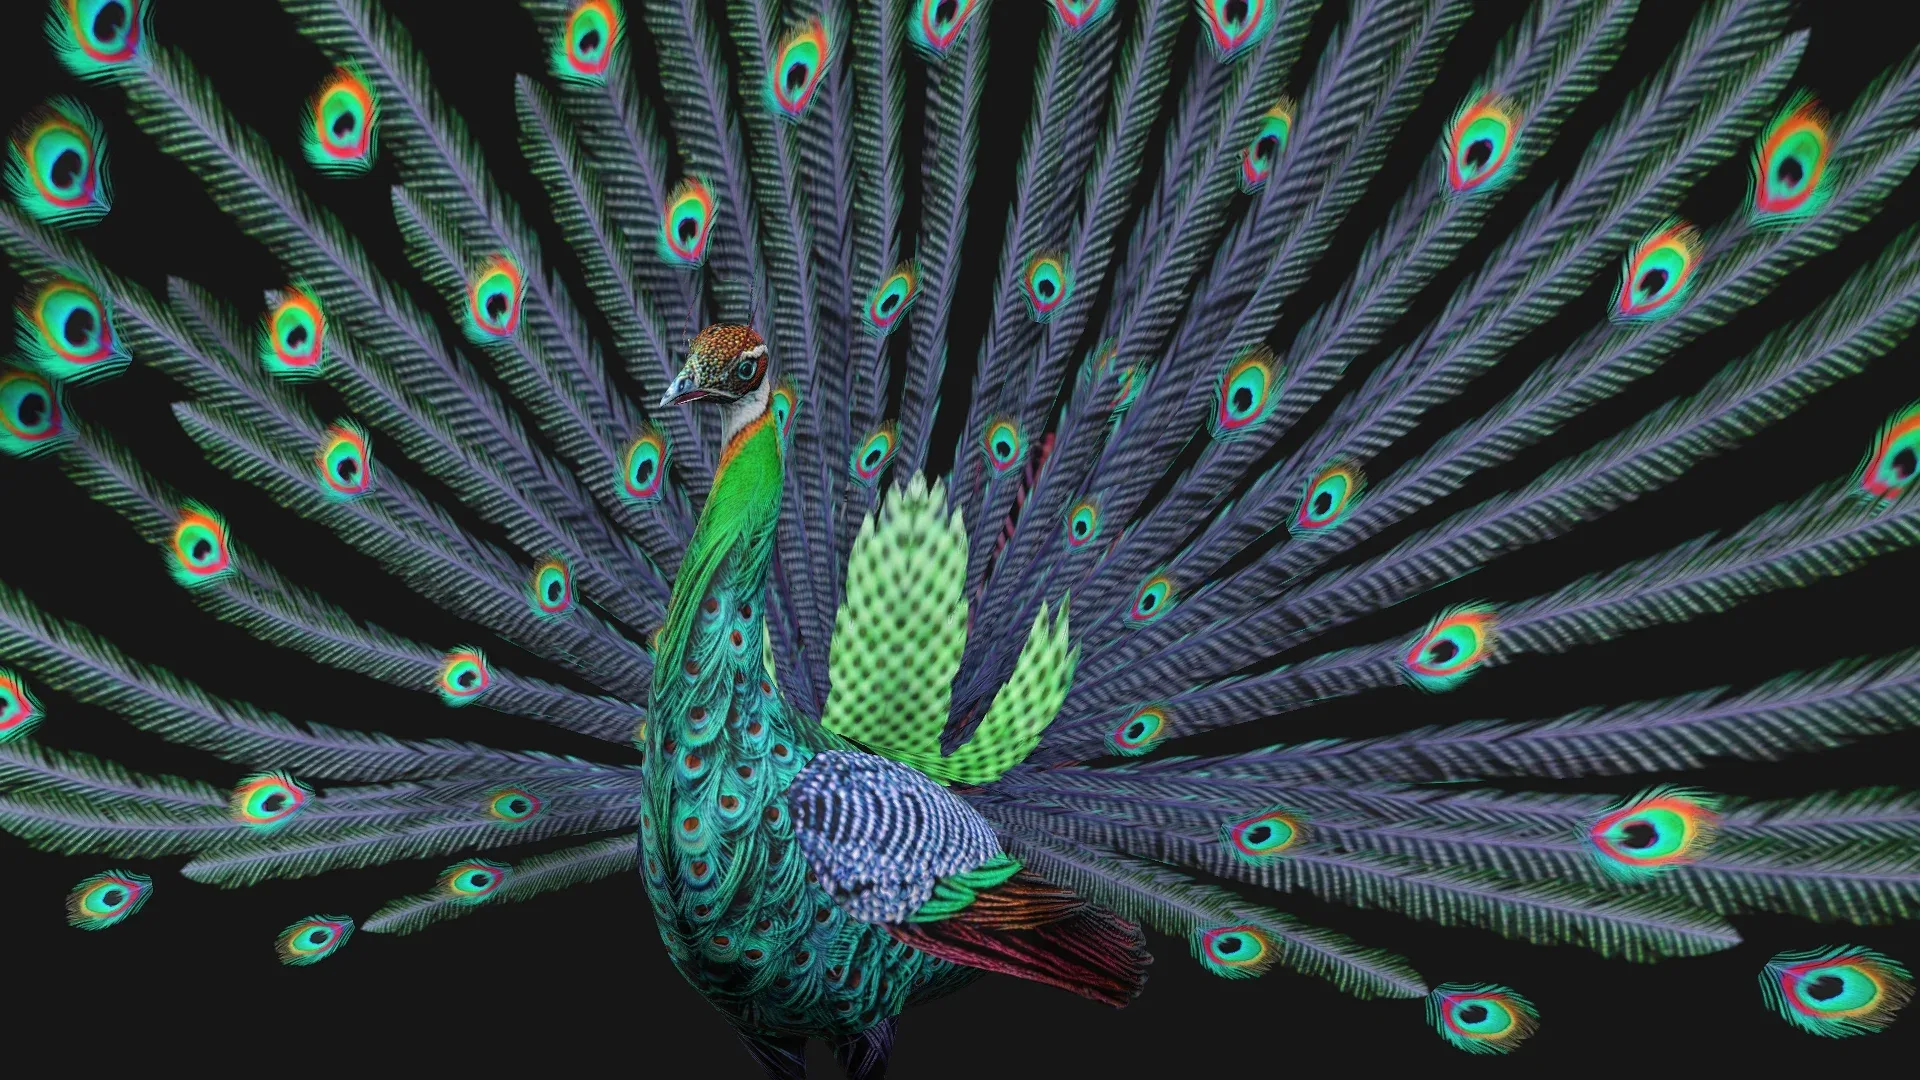 Peacock_A3